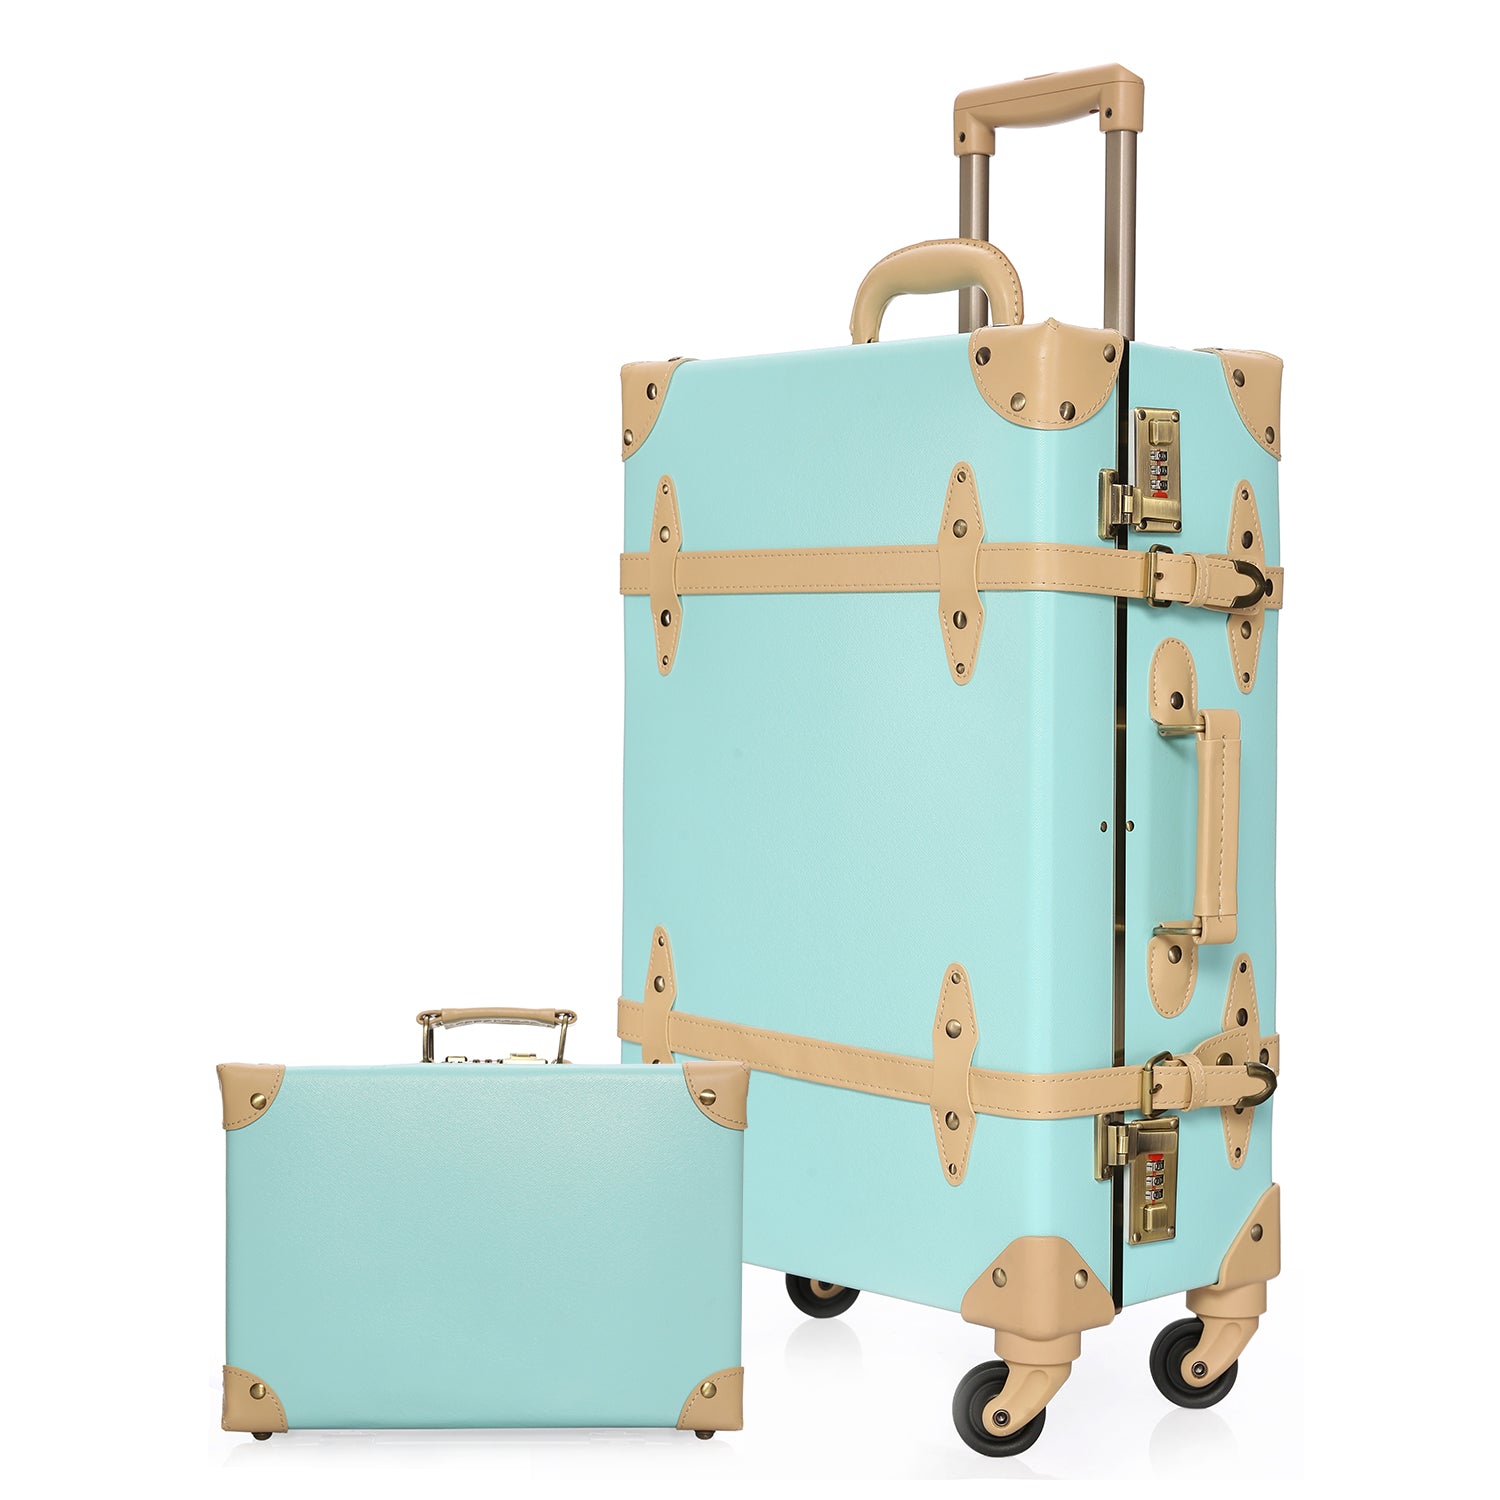 NZBZ Vintage Luggage Sets for Men and Women Retro Suitcase Trunk Lugga –  urecity-luggage